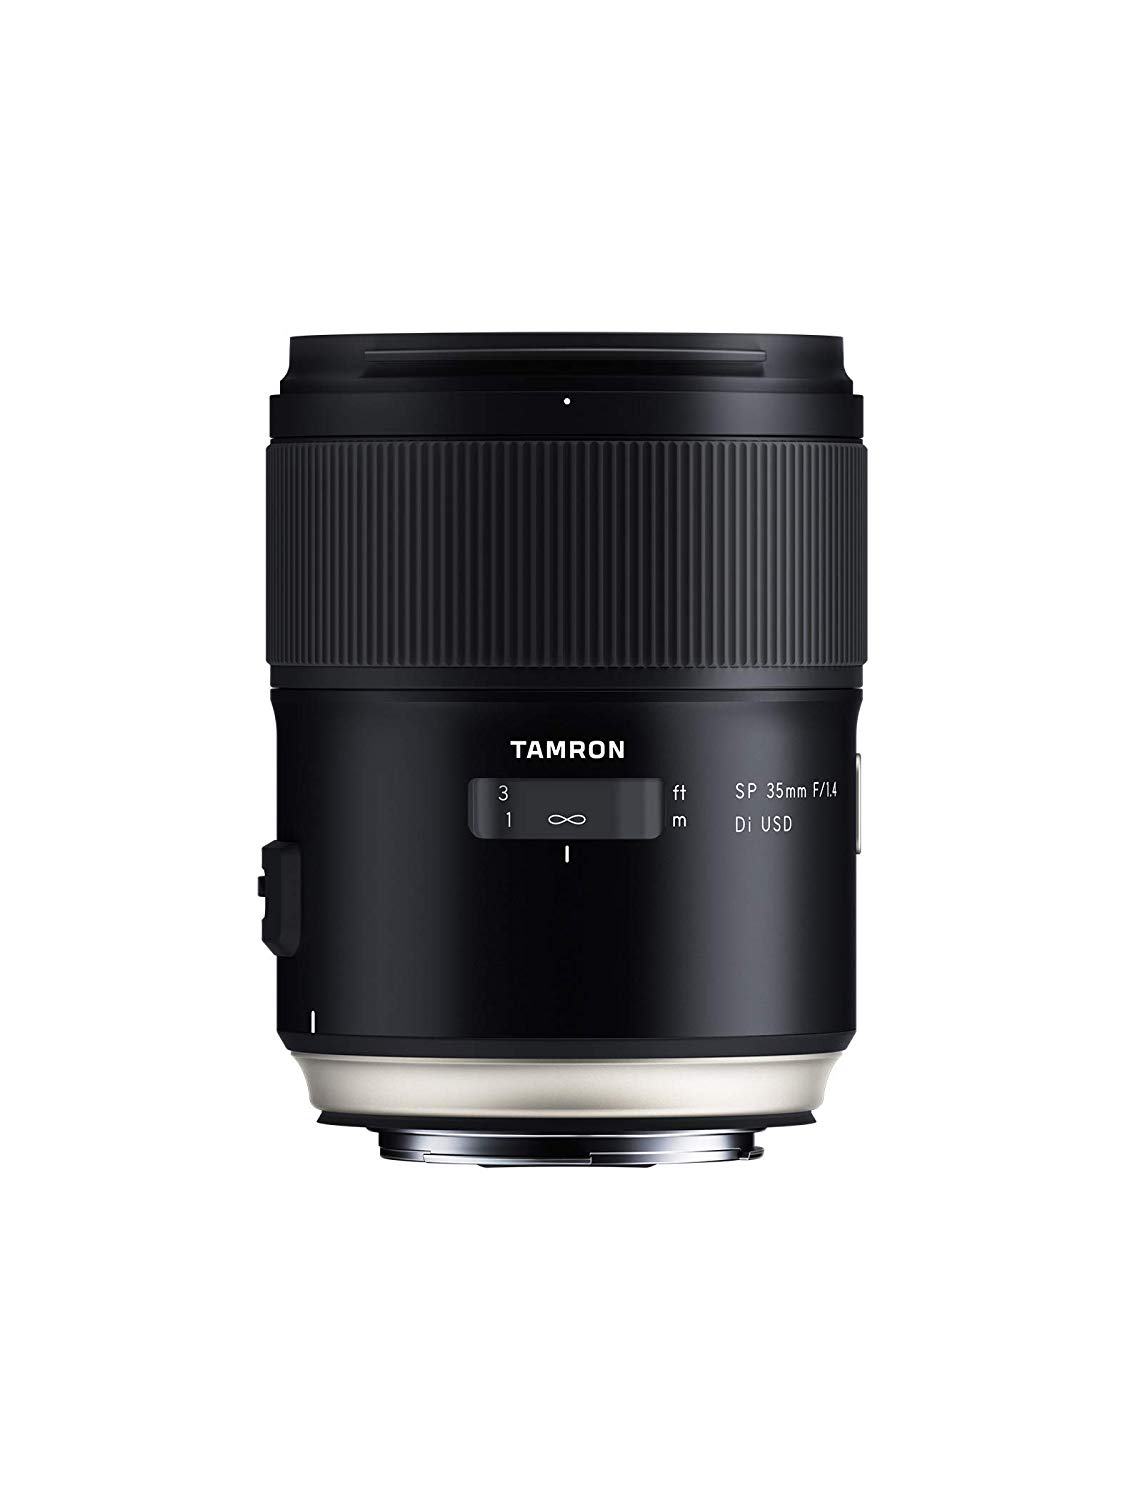 Tamron Lente  SP 35mm f/1.4 di USD para Canon EF